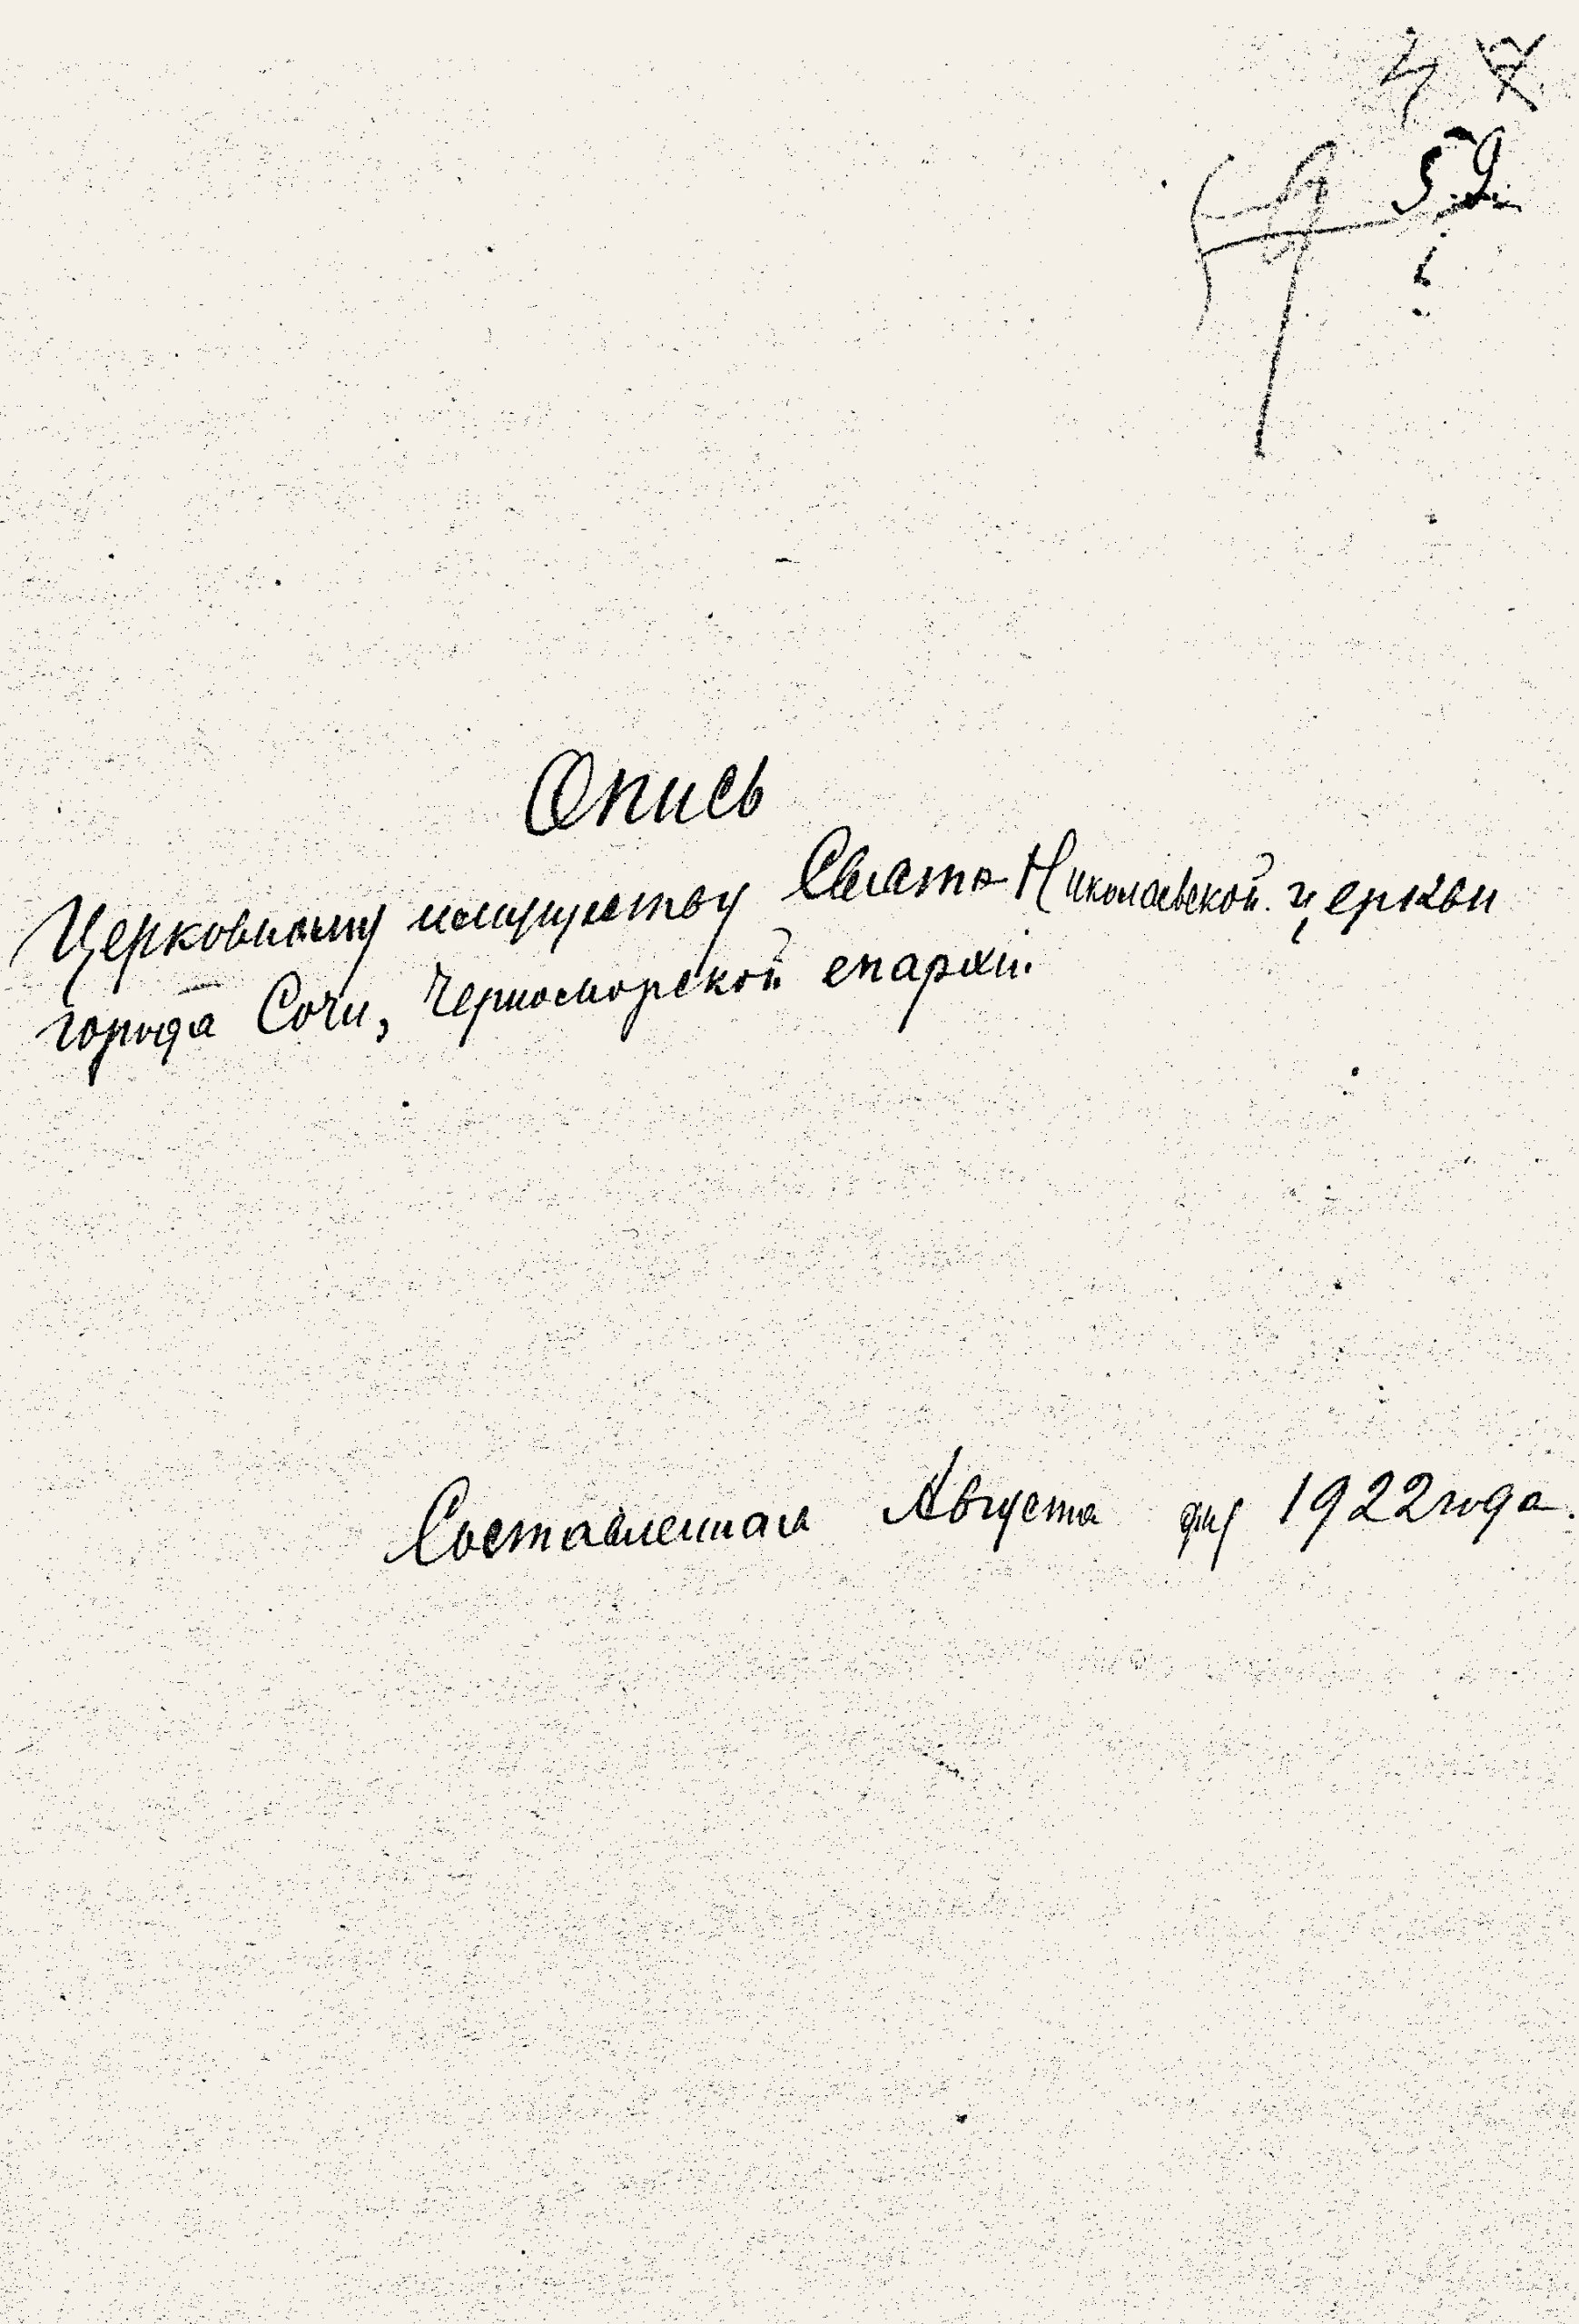 Титульный лист описи церковного имущества Свято-Николаевского храма. Август 1922 года